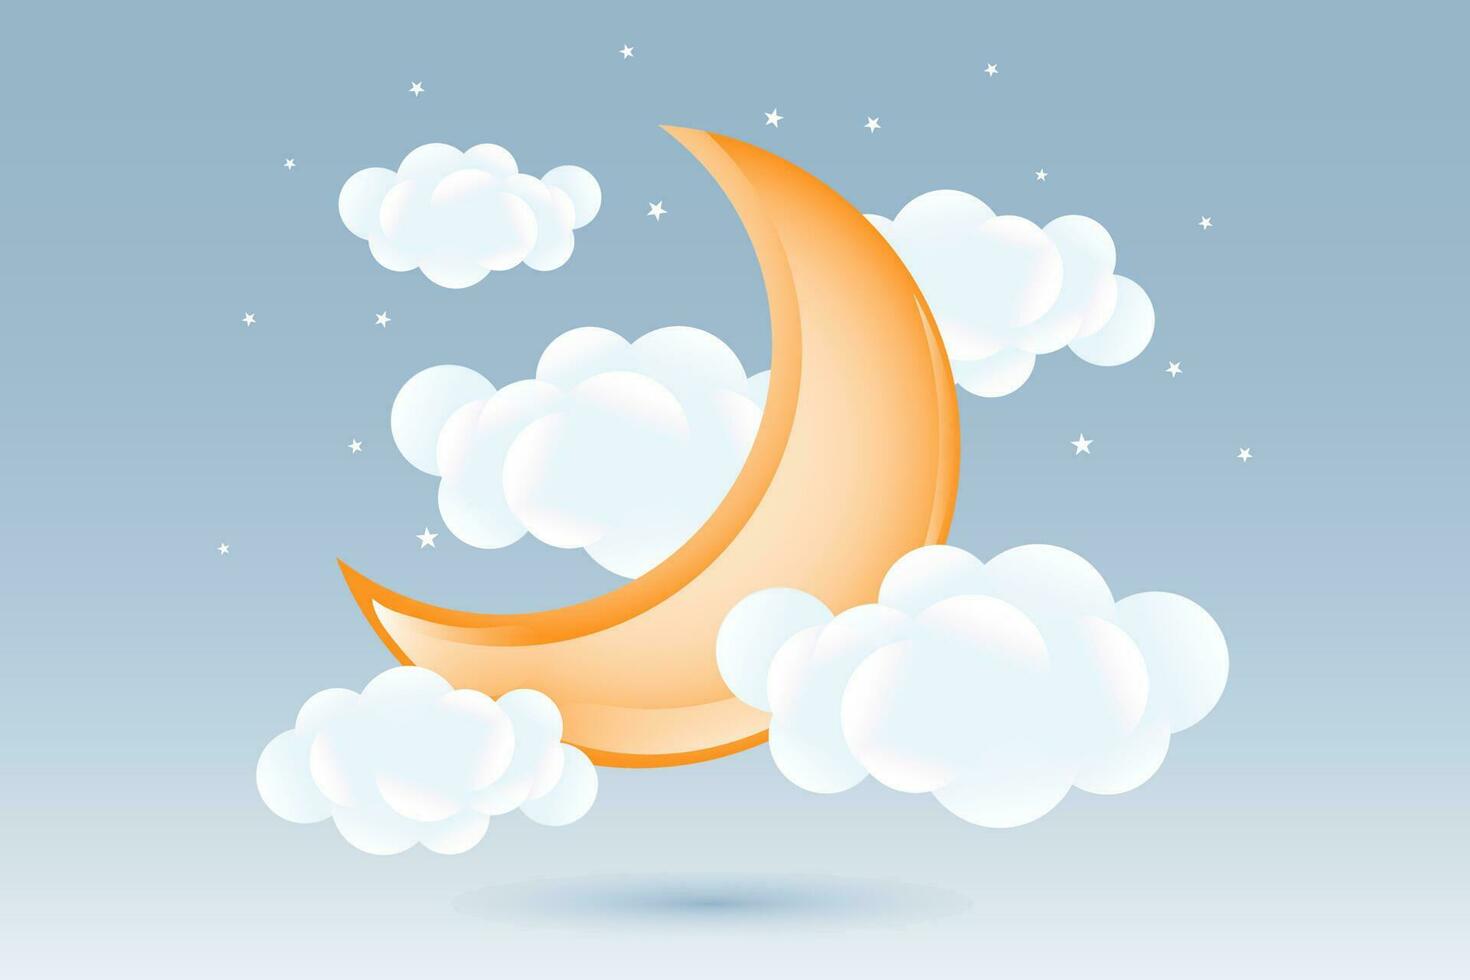 3d bebis dusch, växande måne med moln på en mjuk blå bakgrund, barnslig design i pastell färger. bakgrund, illustration, vektor